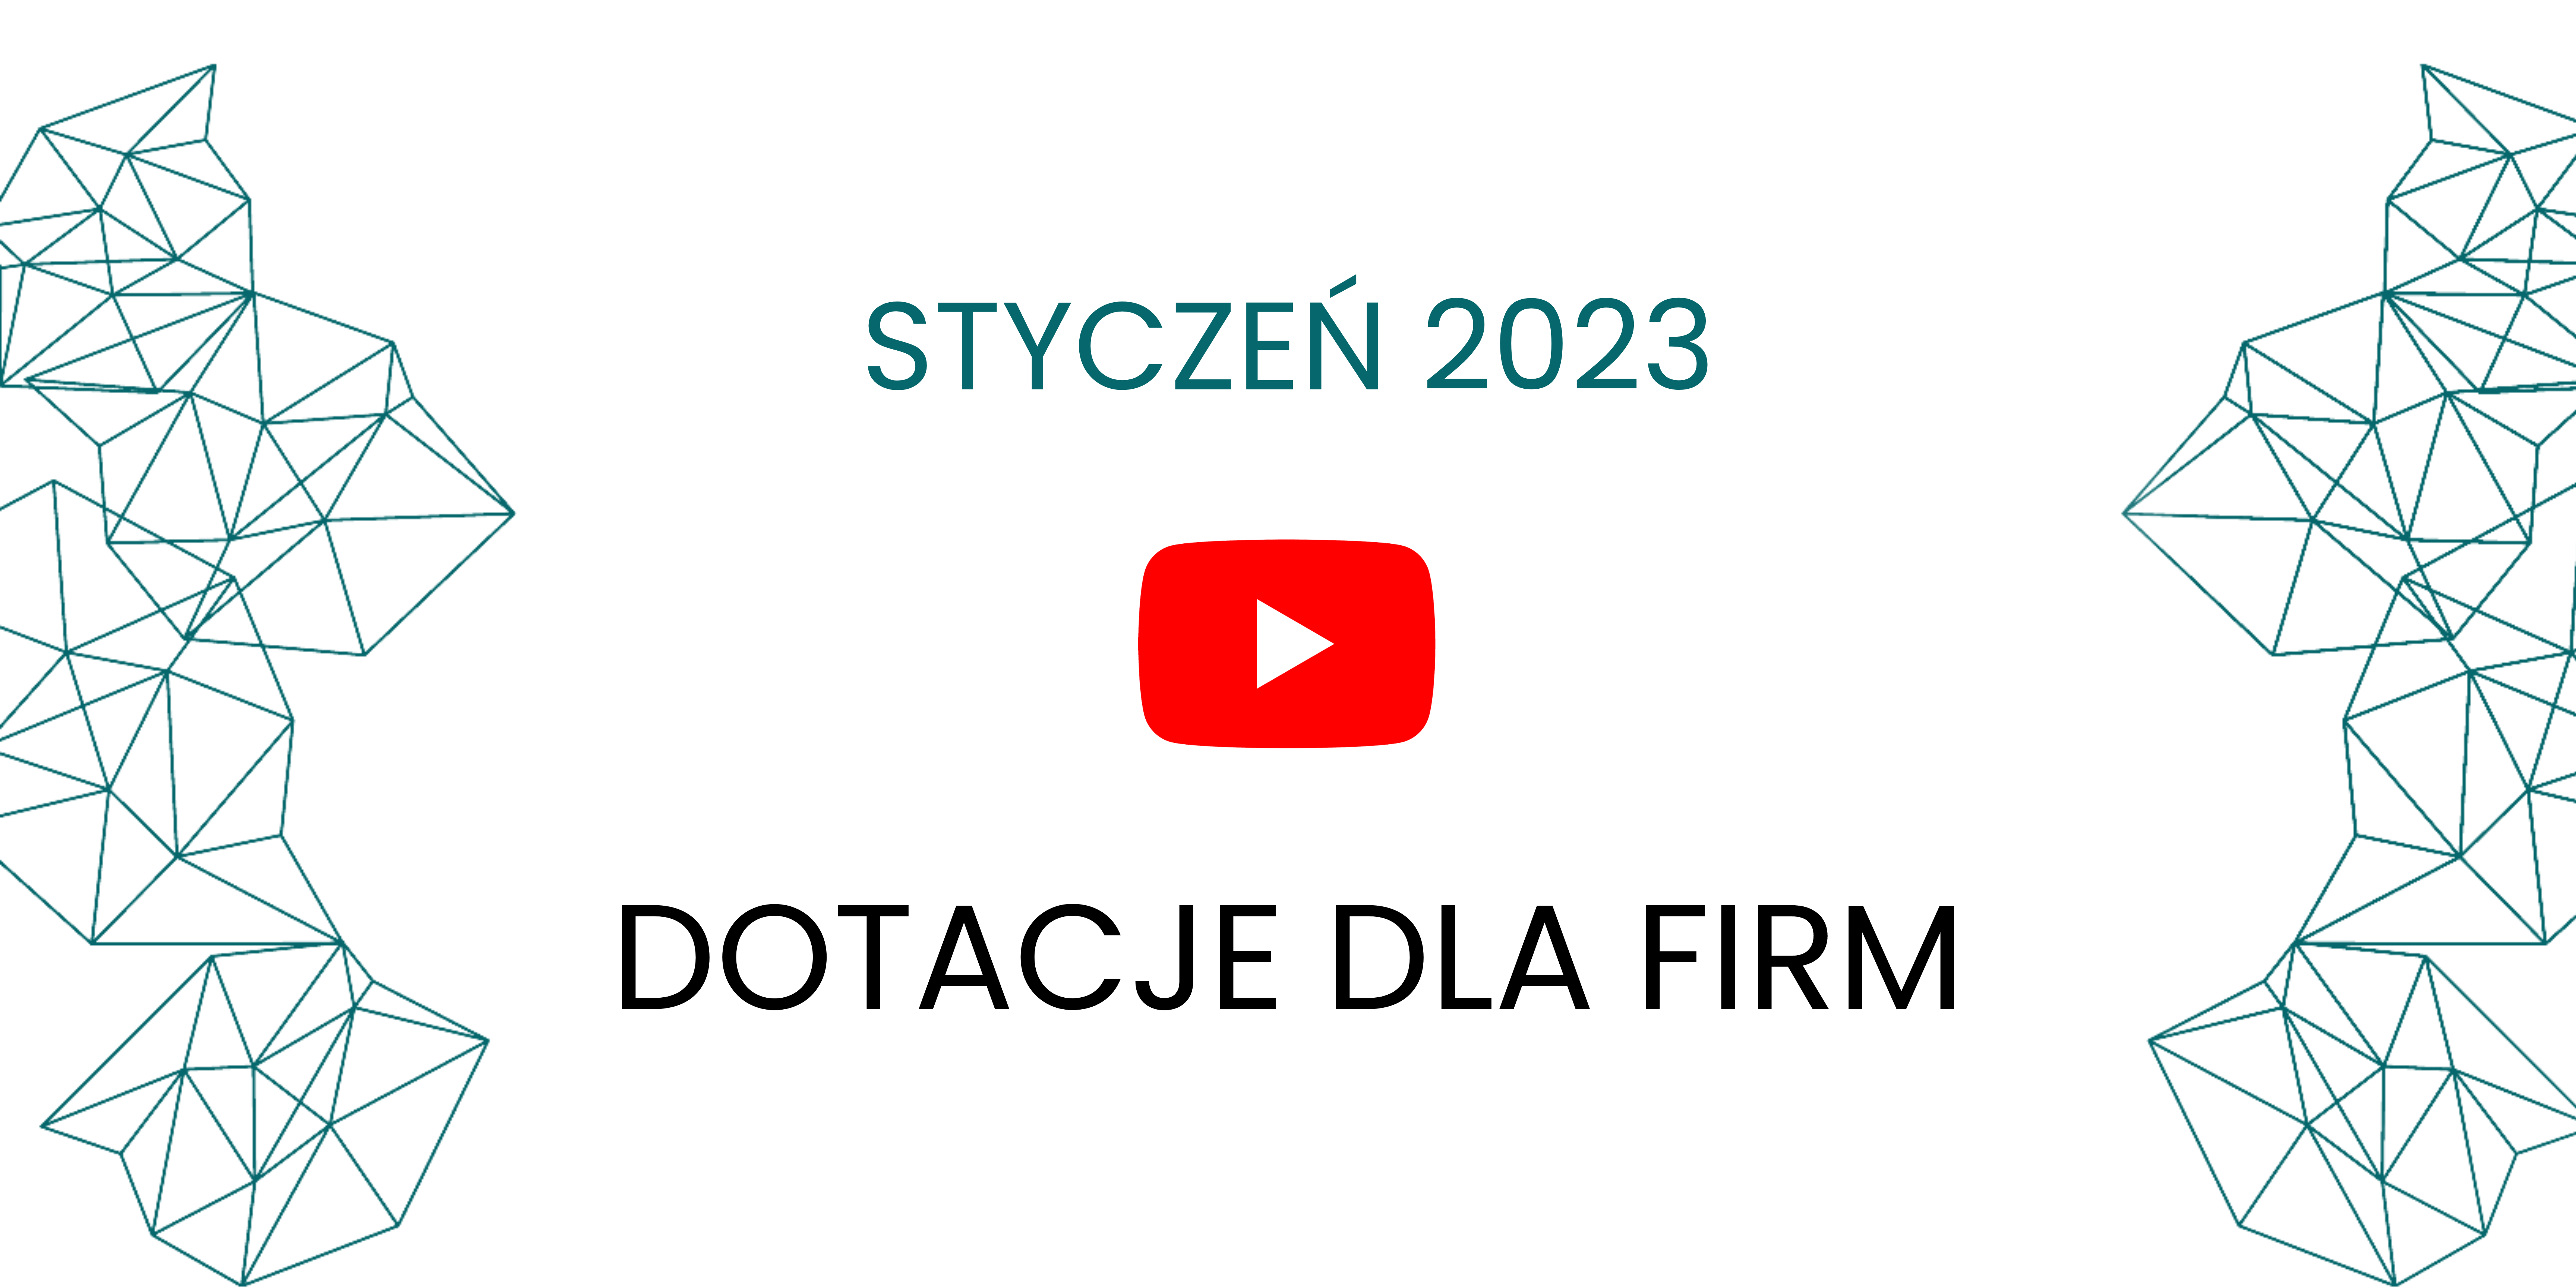 dotacje-dla-firm-styczen-2023